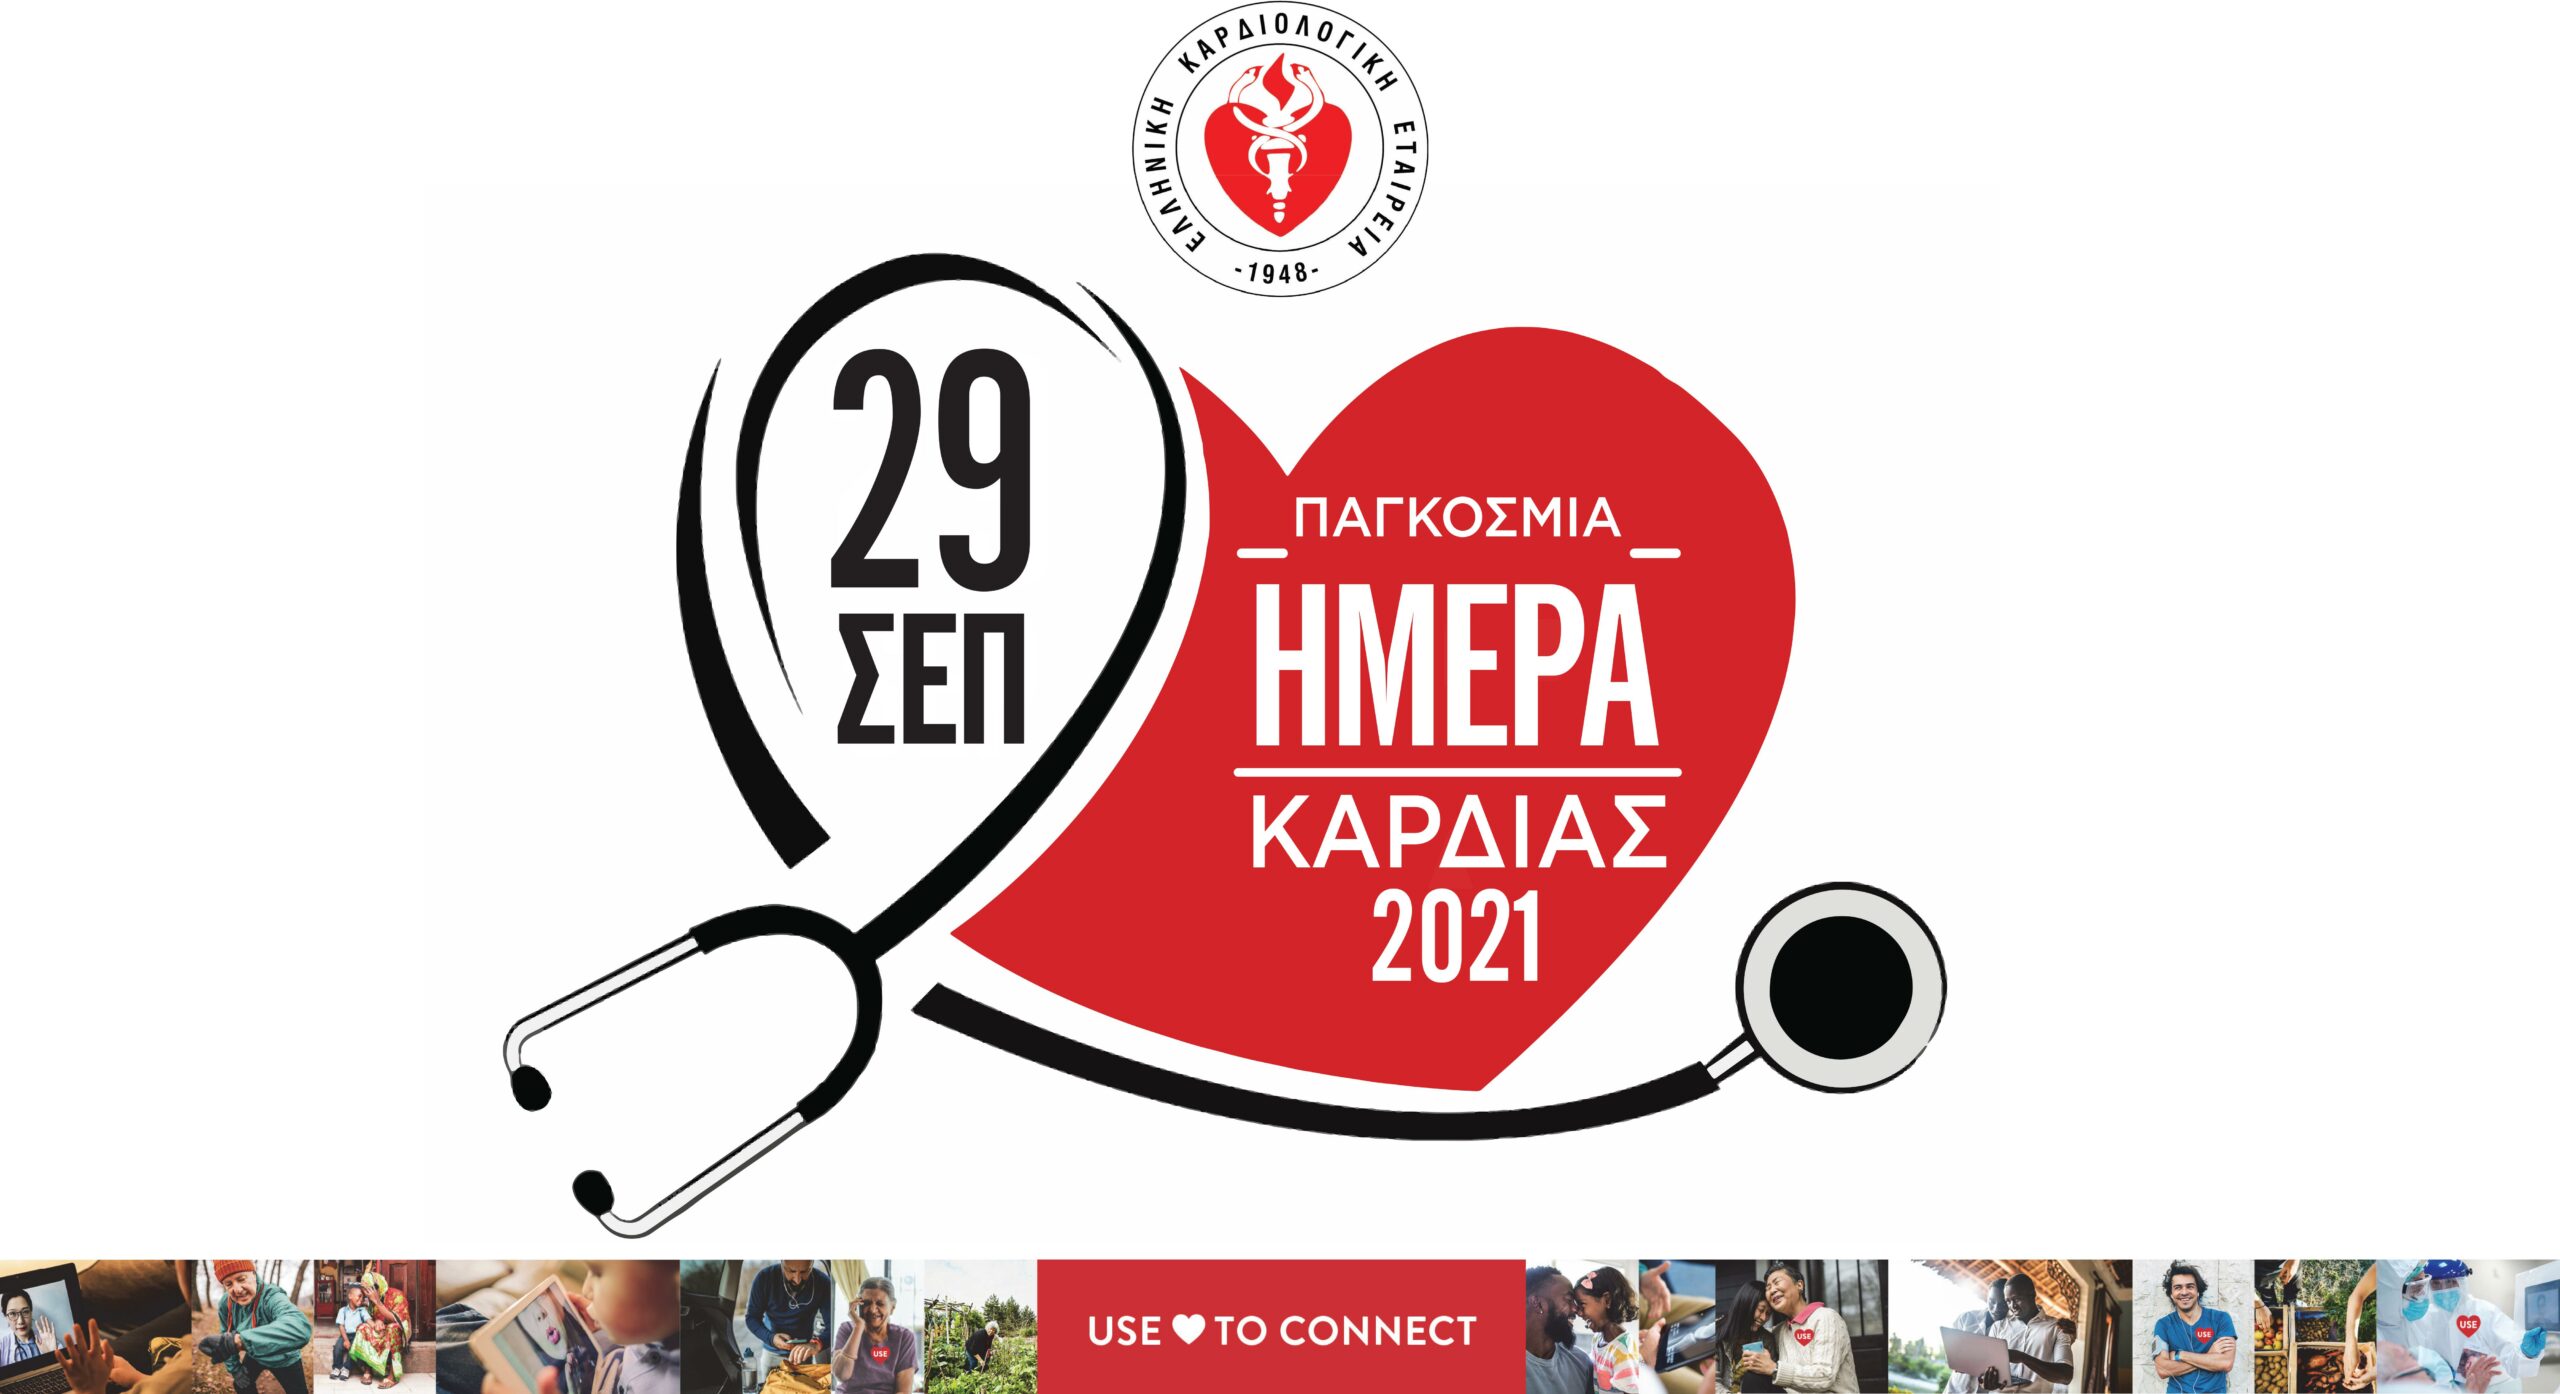 Παγκόσμια Ημέρα Καρδιάς: Συνέντευξη Τύπου της Ελληνικής Καρδιολογικής Εταιρείας   με αφορμή την Παγκόσμια Ημέρα Καρδιάς